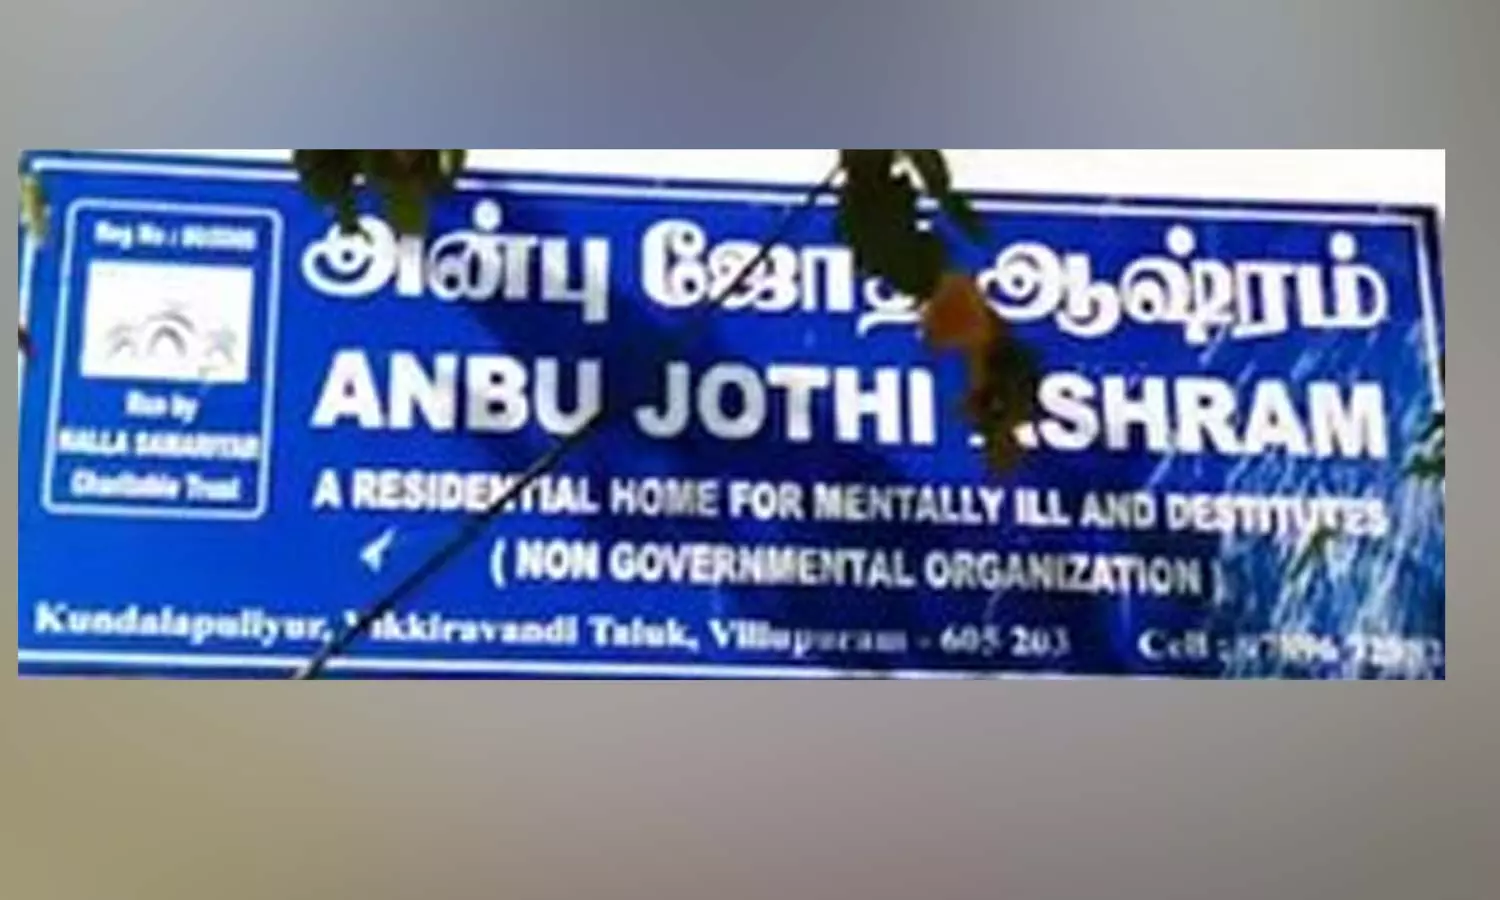 அன்புஜோதி ஆசிரம வழக்கு- அடுத்தடுத்து நடைபெறும் விசாரணையால் பரபரப்பு | Tamil  News Anbu Jothi Ashram Case investigation